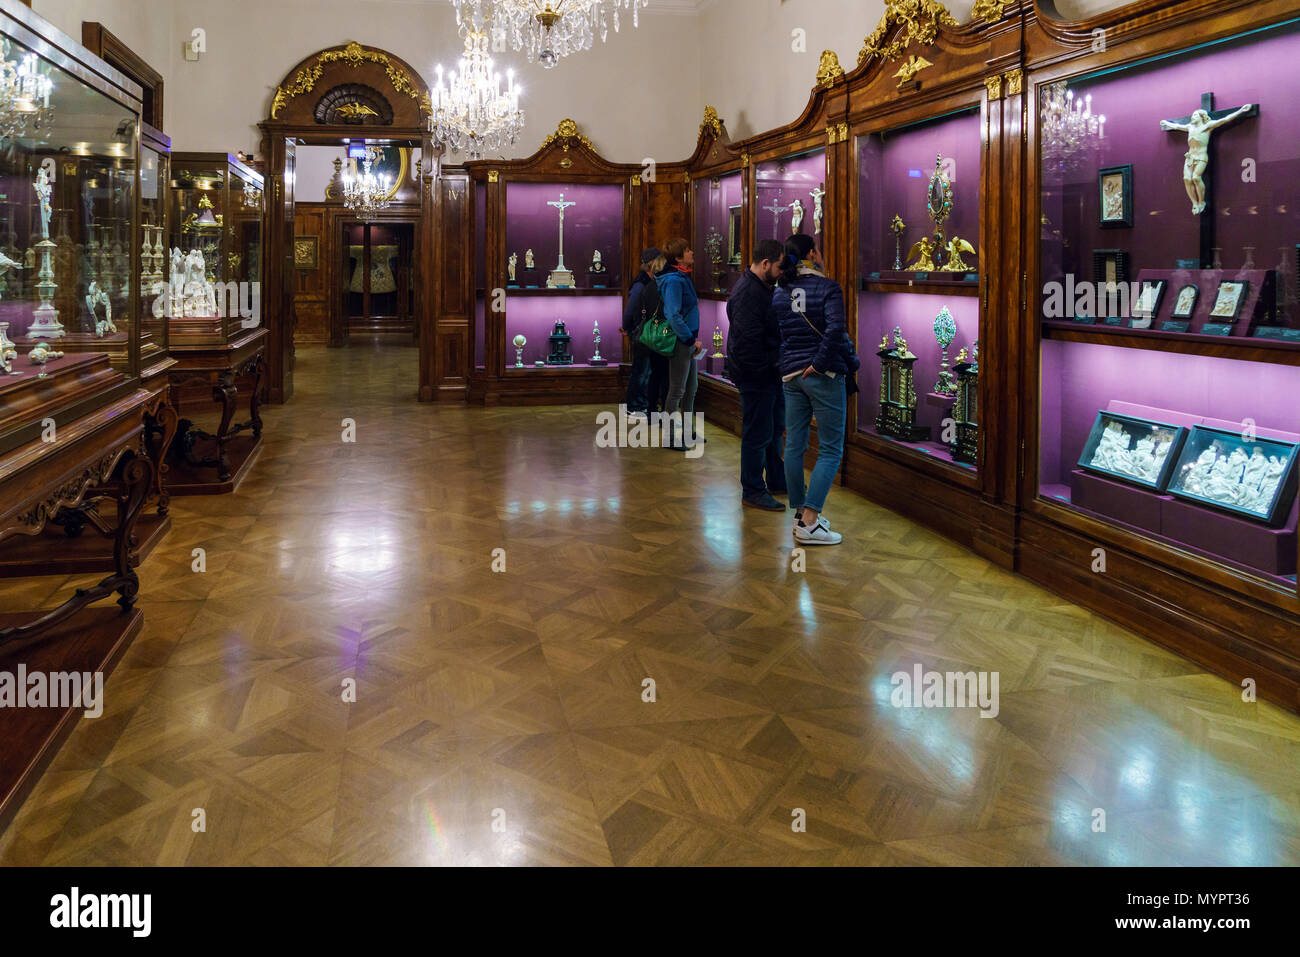 Vienna, Austria - 22 Ottobre 2017: i visitatori nelle sale con artefatti religiosi nel tesoro imperiale o Kaiserliche Schatzkammer presso la Hofburg Pal Foto Stock